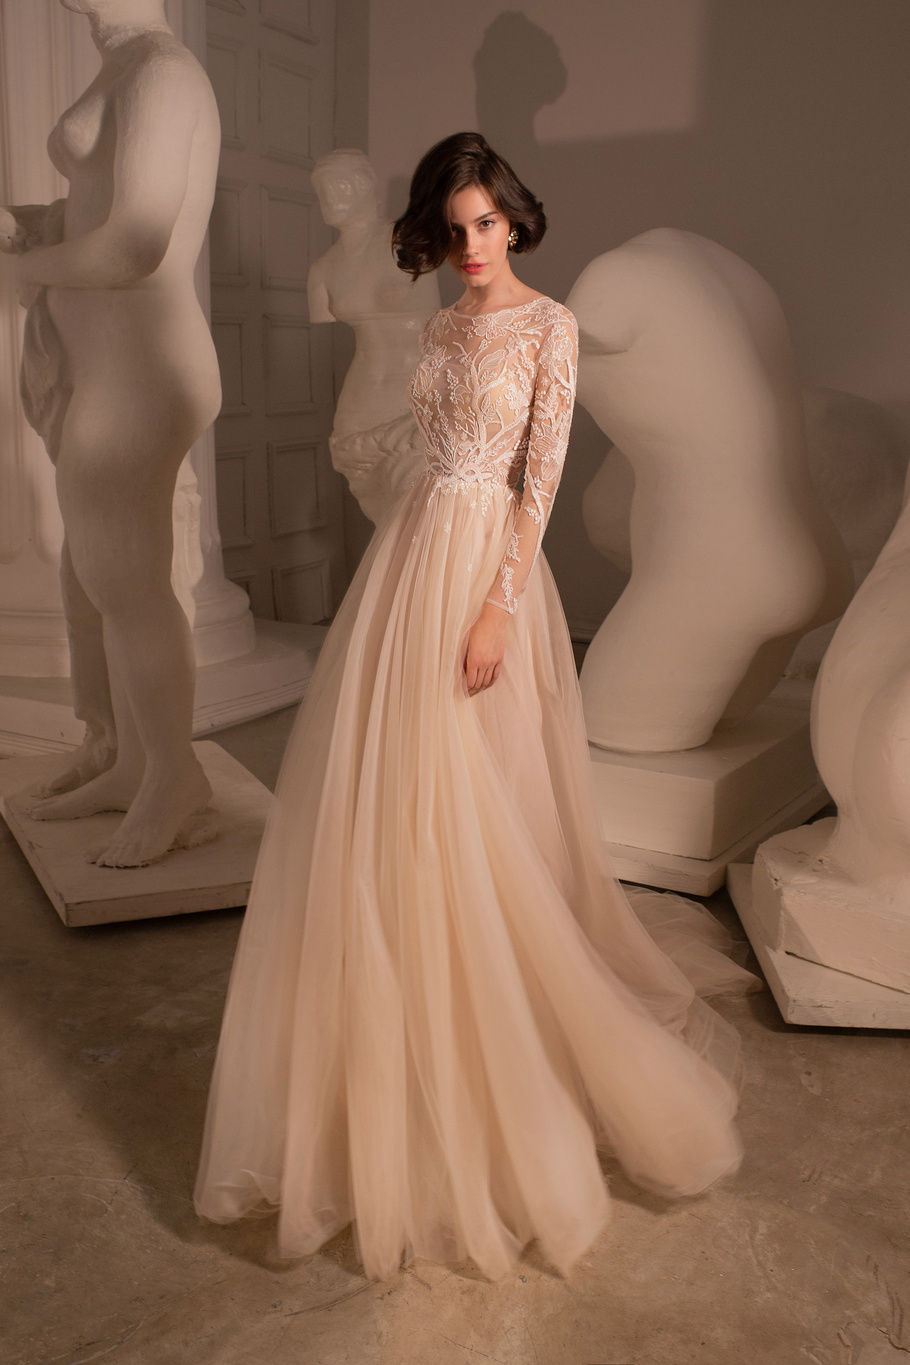 Купить свадебное платье «Эйва» Татьяны Каплун из коллекции «Десерт Пешн 2020» в салоне свадебных платьев